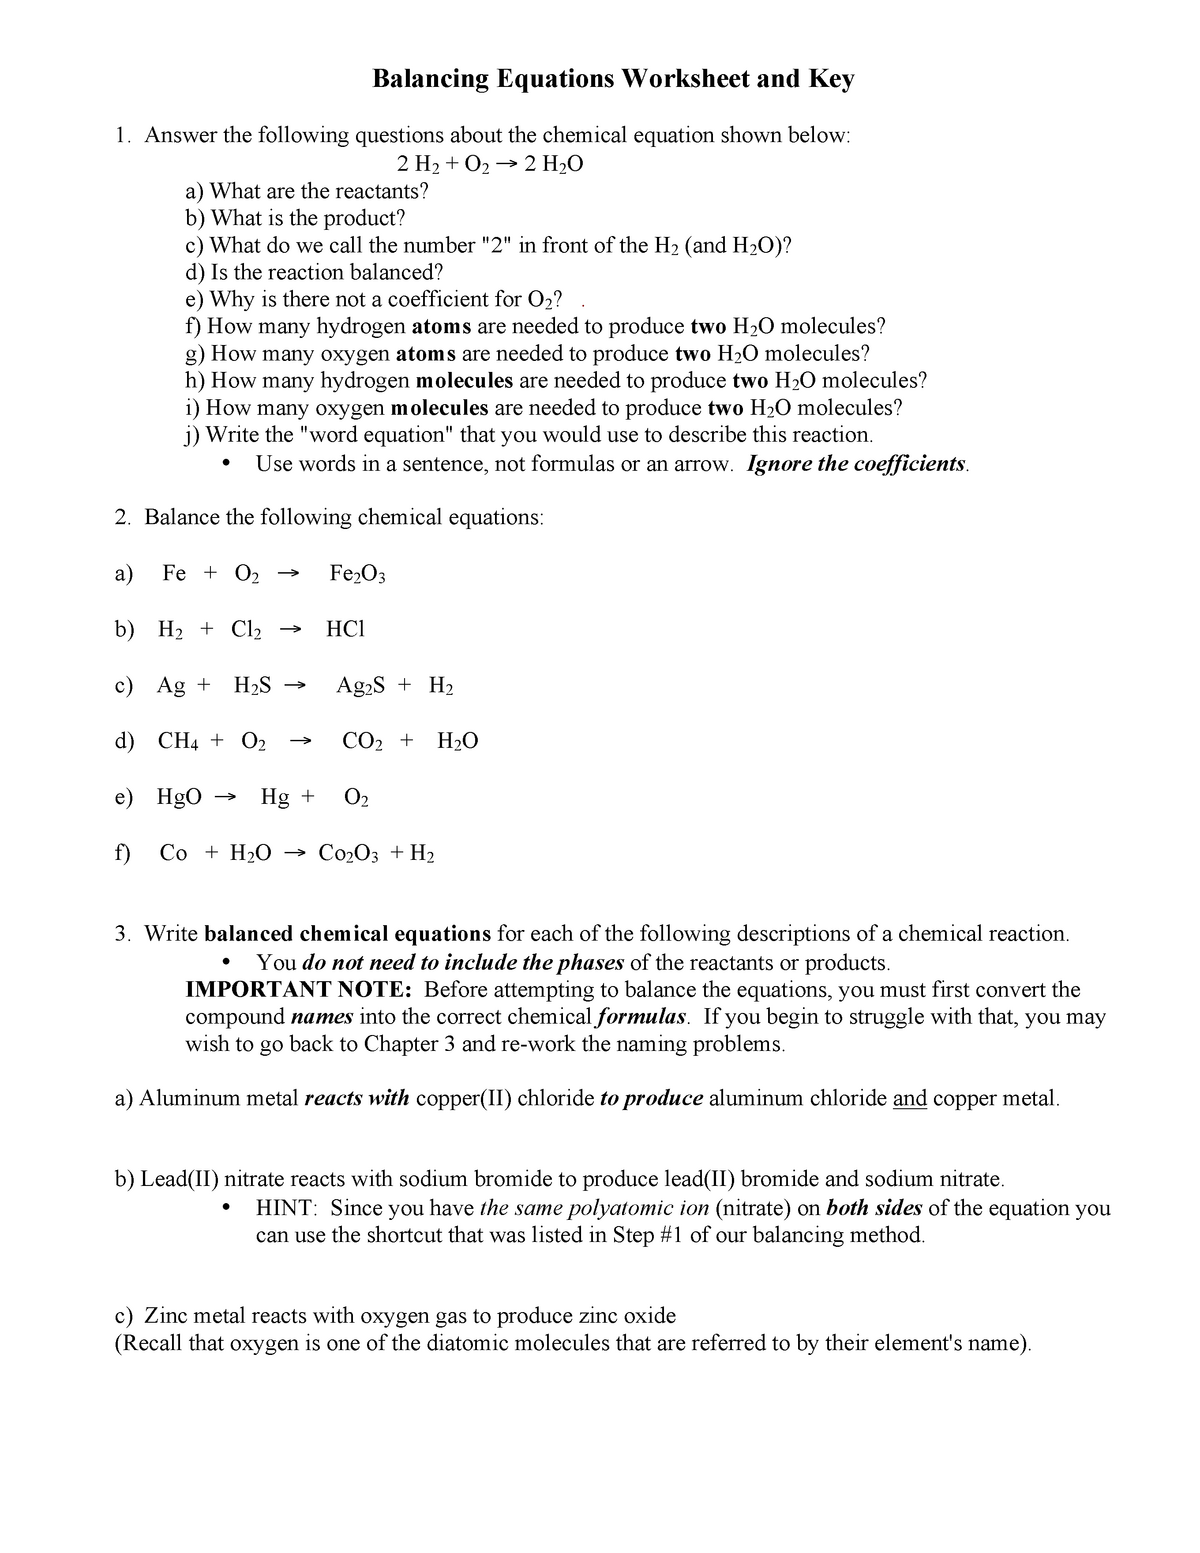 Balancing equations worksheet and key 21 21 21 - Balancing Inside Balancing Equation Worksheet With Answers